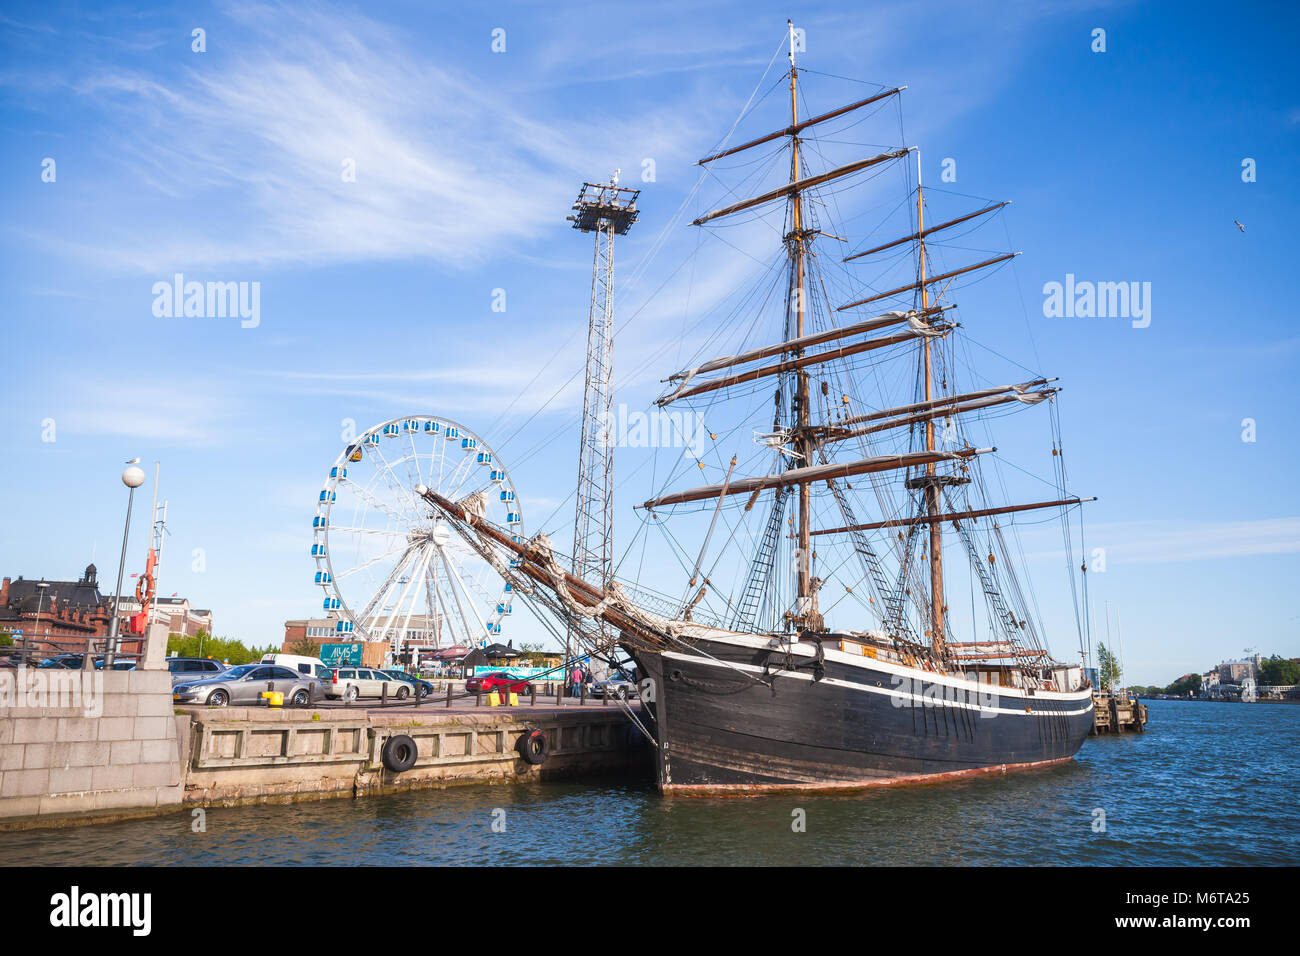 Helsinki, Finnland - 12. Juli 2015: Vintage schwarz brig steht in Helsinki Hafen festgemacht, alte hölzerne Segelschiff Stockfoto